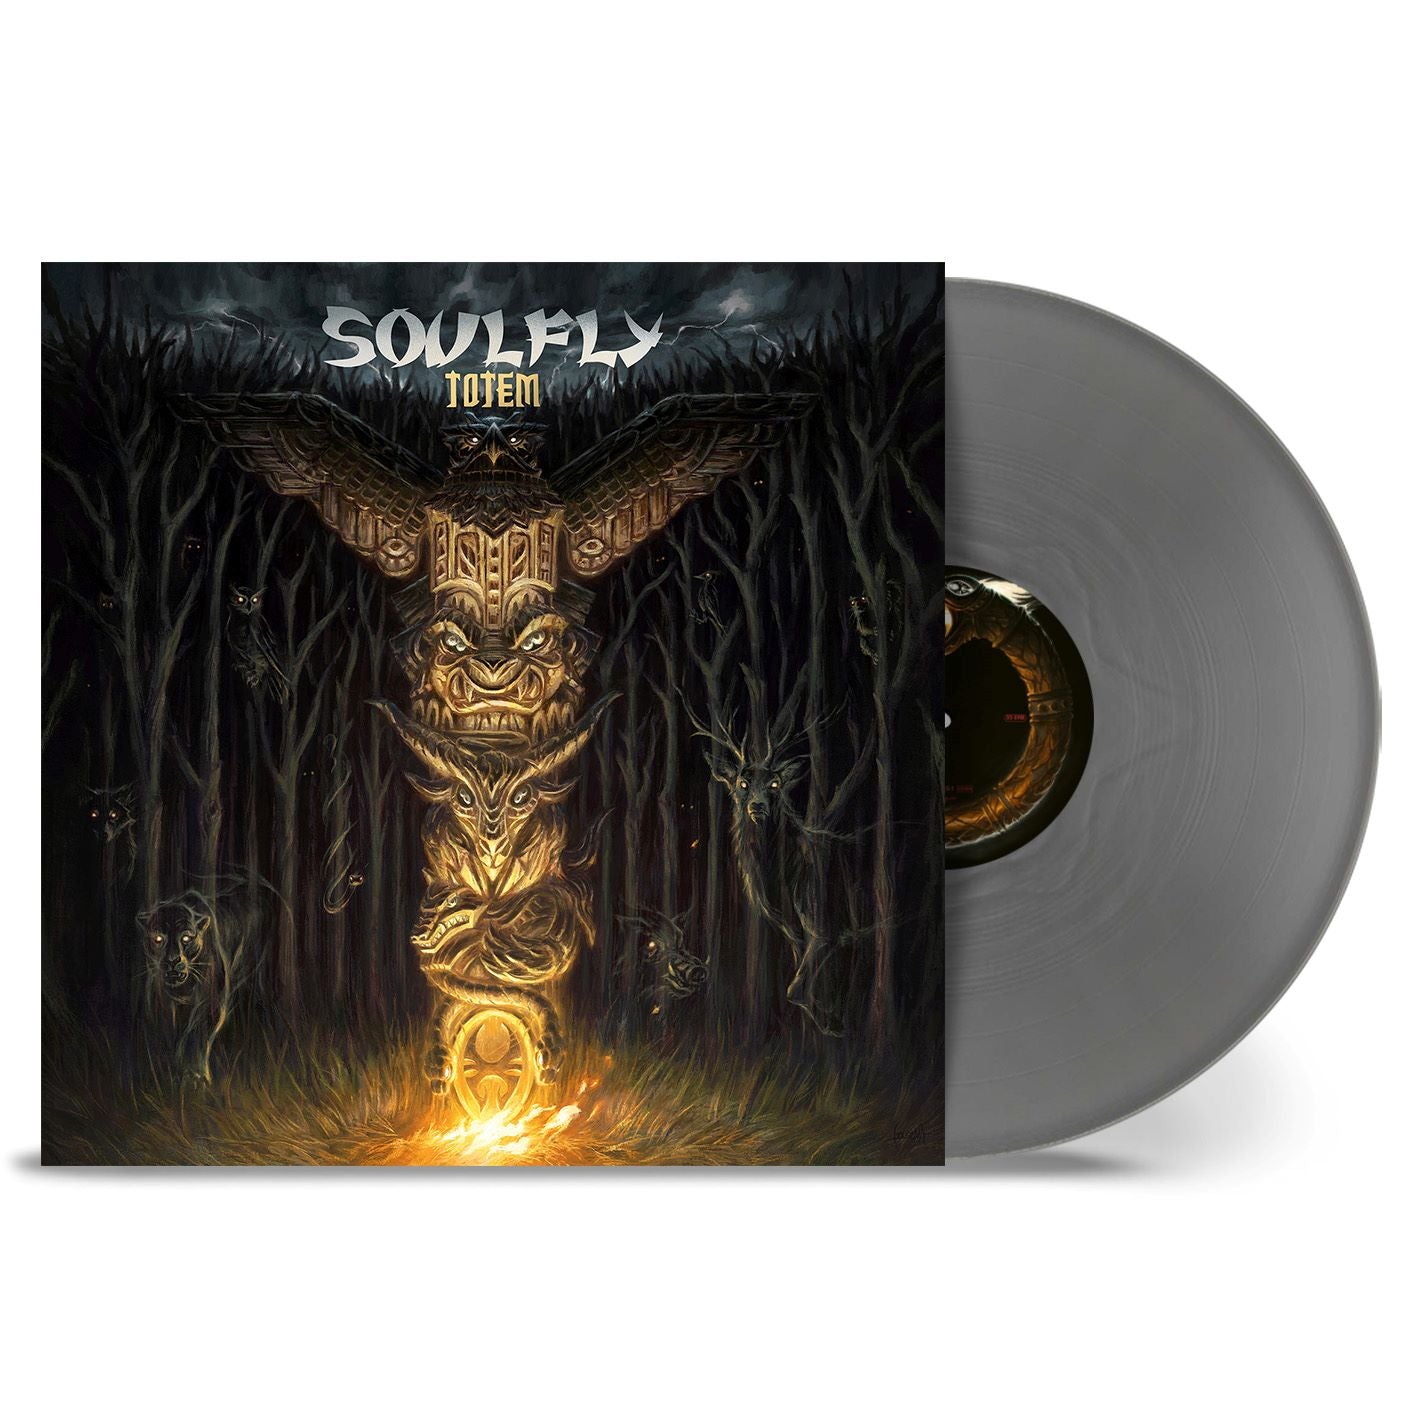 Soulfly "Totem" Silver Vinyl